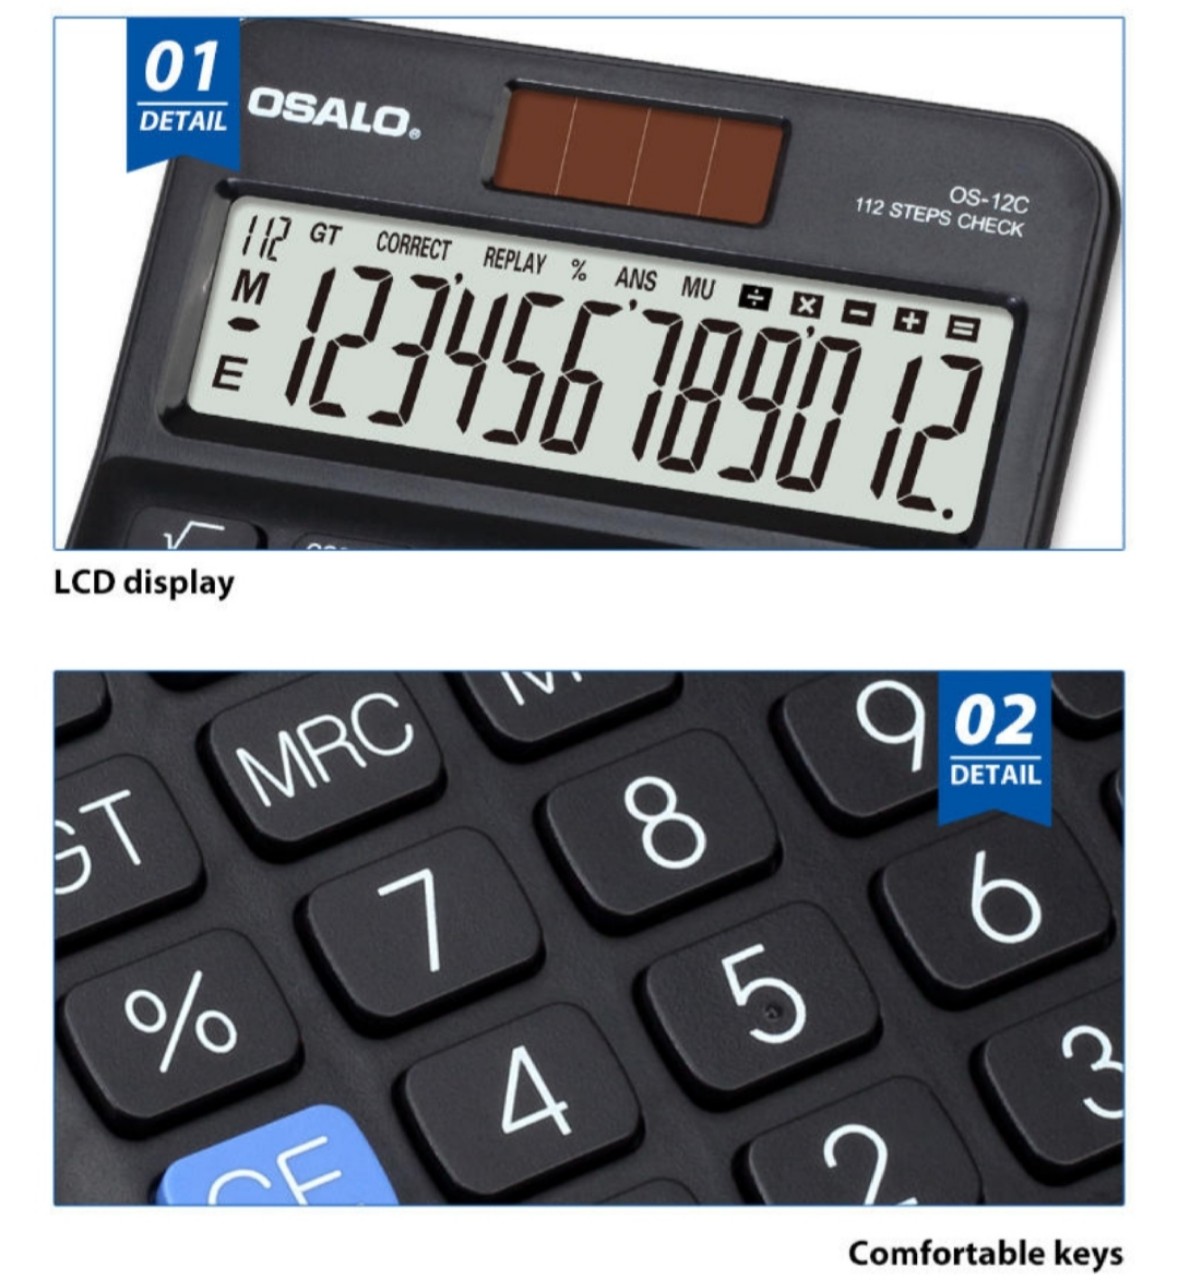 Máy tính bán hàng cầm tay OSALO OS-12C chính hãng, chất lượng cao(tiêu chuẩn Châu Âu-CE),Màn hình CLD Nhật rộng, sắc nét, 12 chữ số, thiết kế sang trọng, mạnh mẻ.